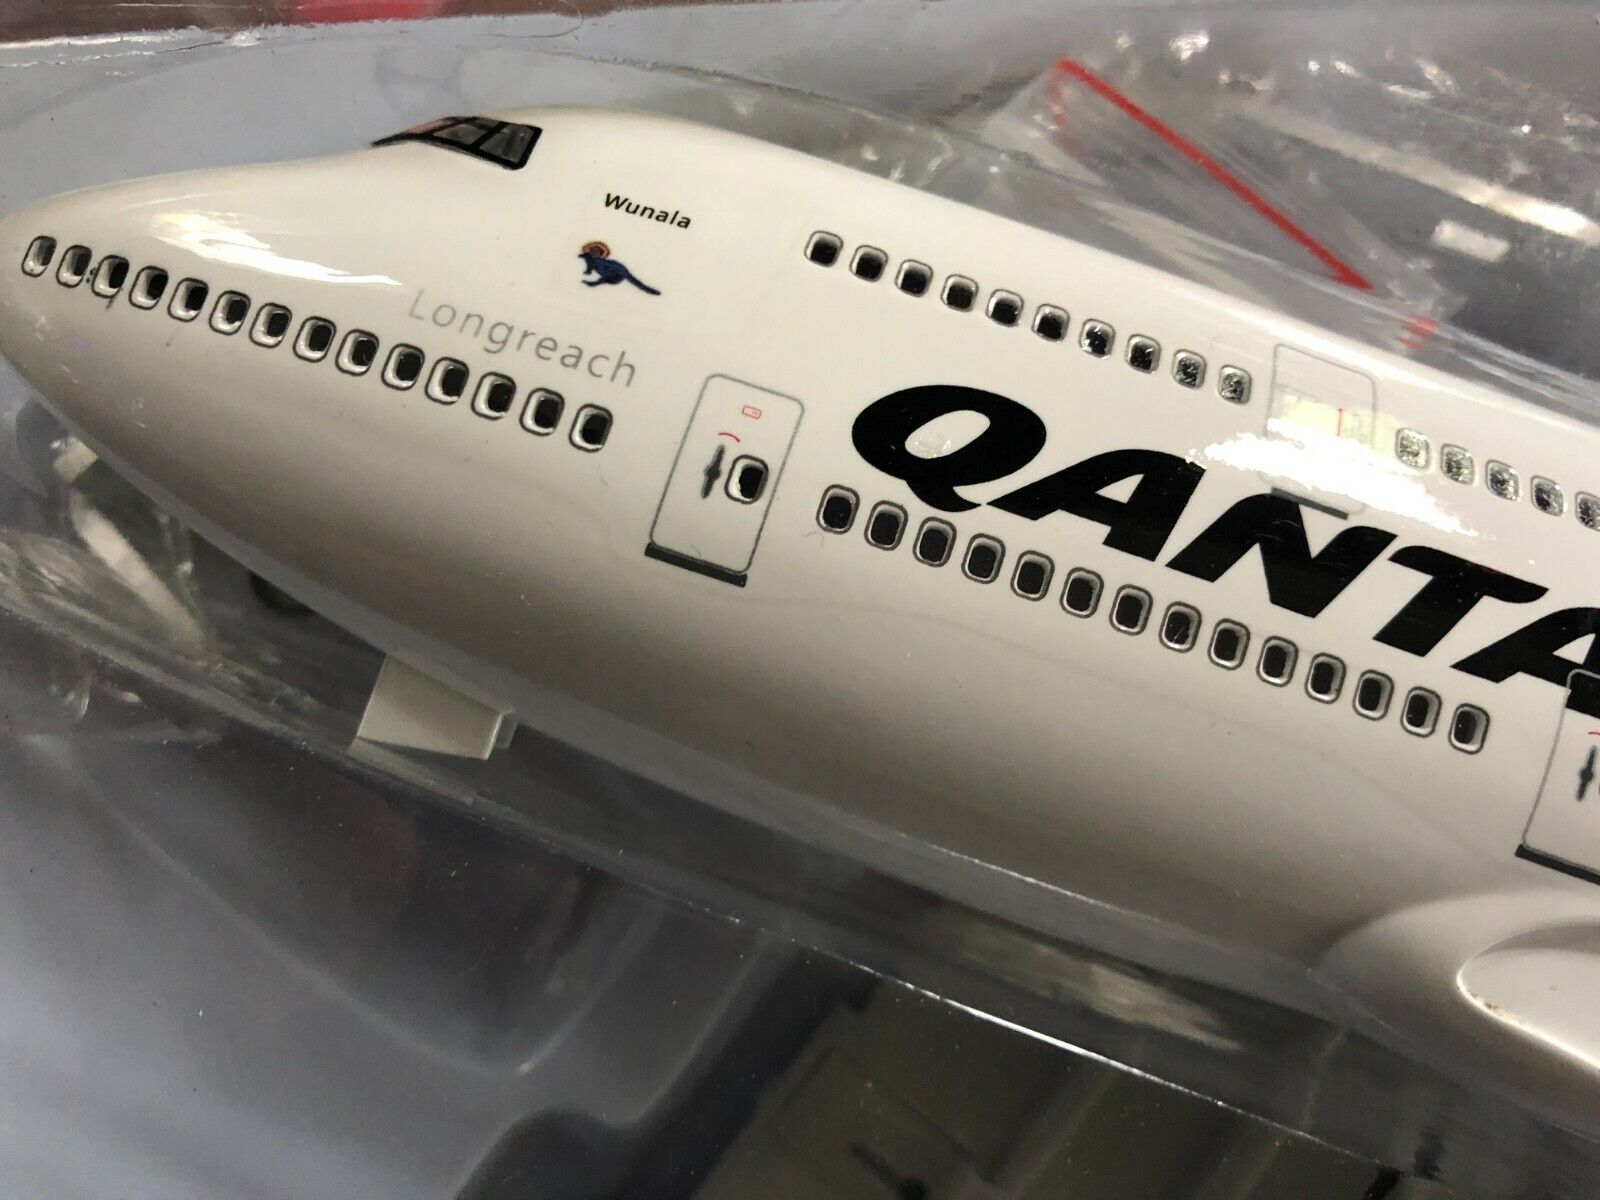 Qantas 747 Large Plane Model  ✈ 1:160 Airplane 45cm LED Cab Lights VH OEJ Wunala